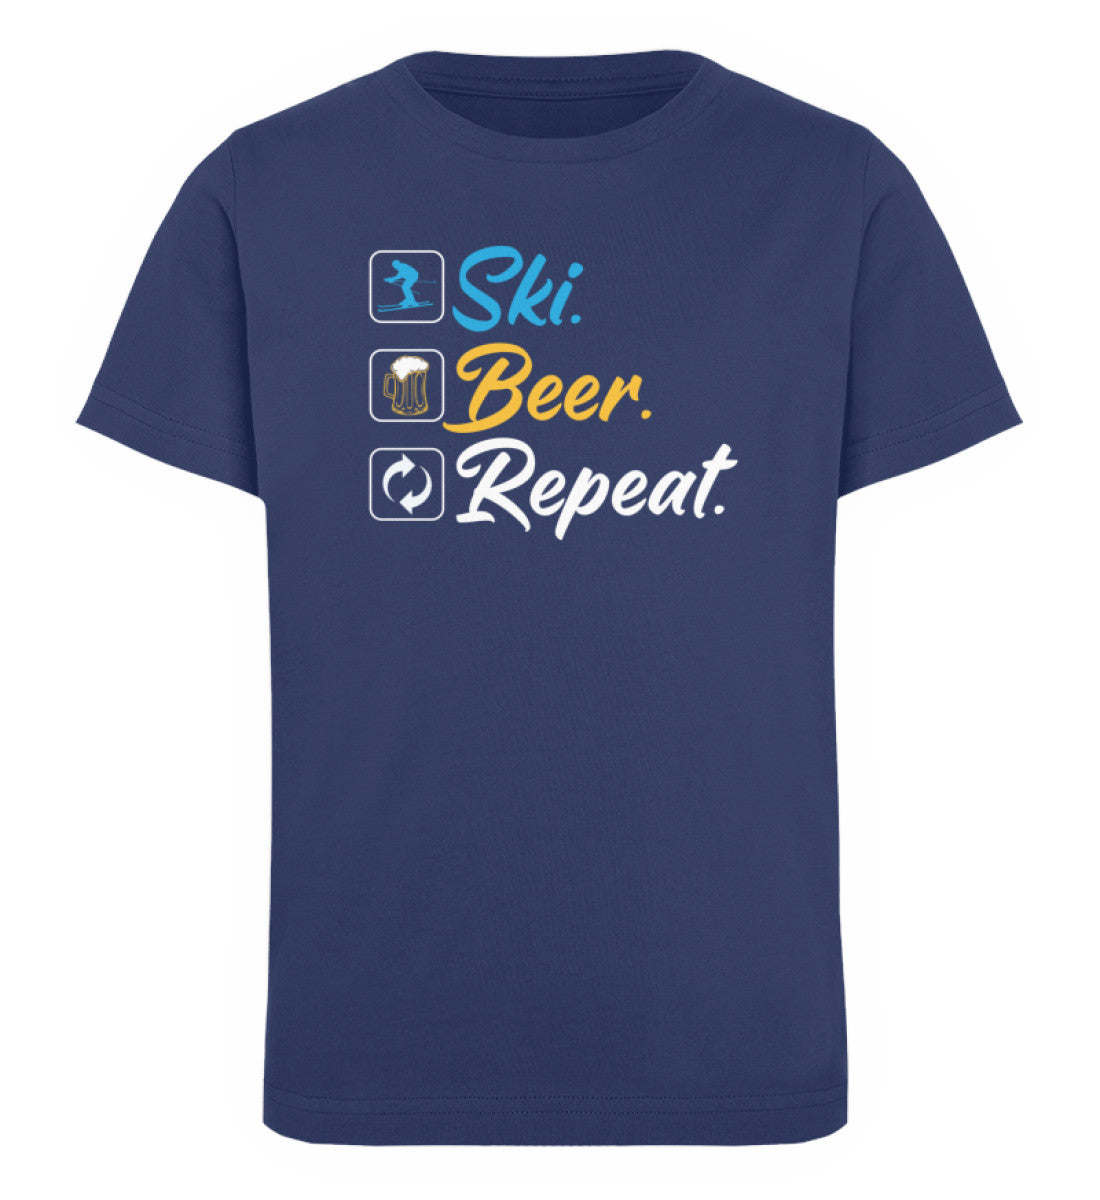 Ski. Beer. Repeat. - Kinder Premium Organic T-Shirt Navyblau